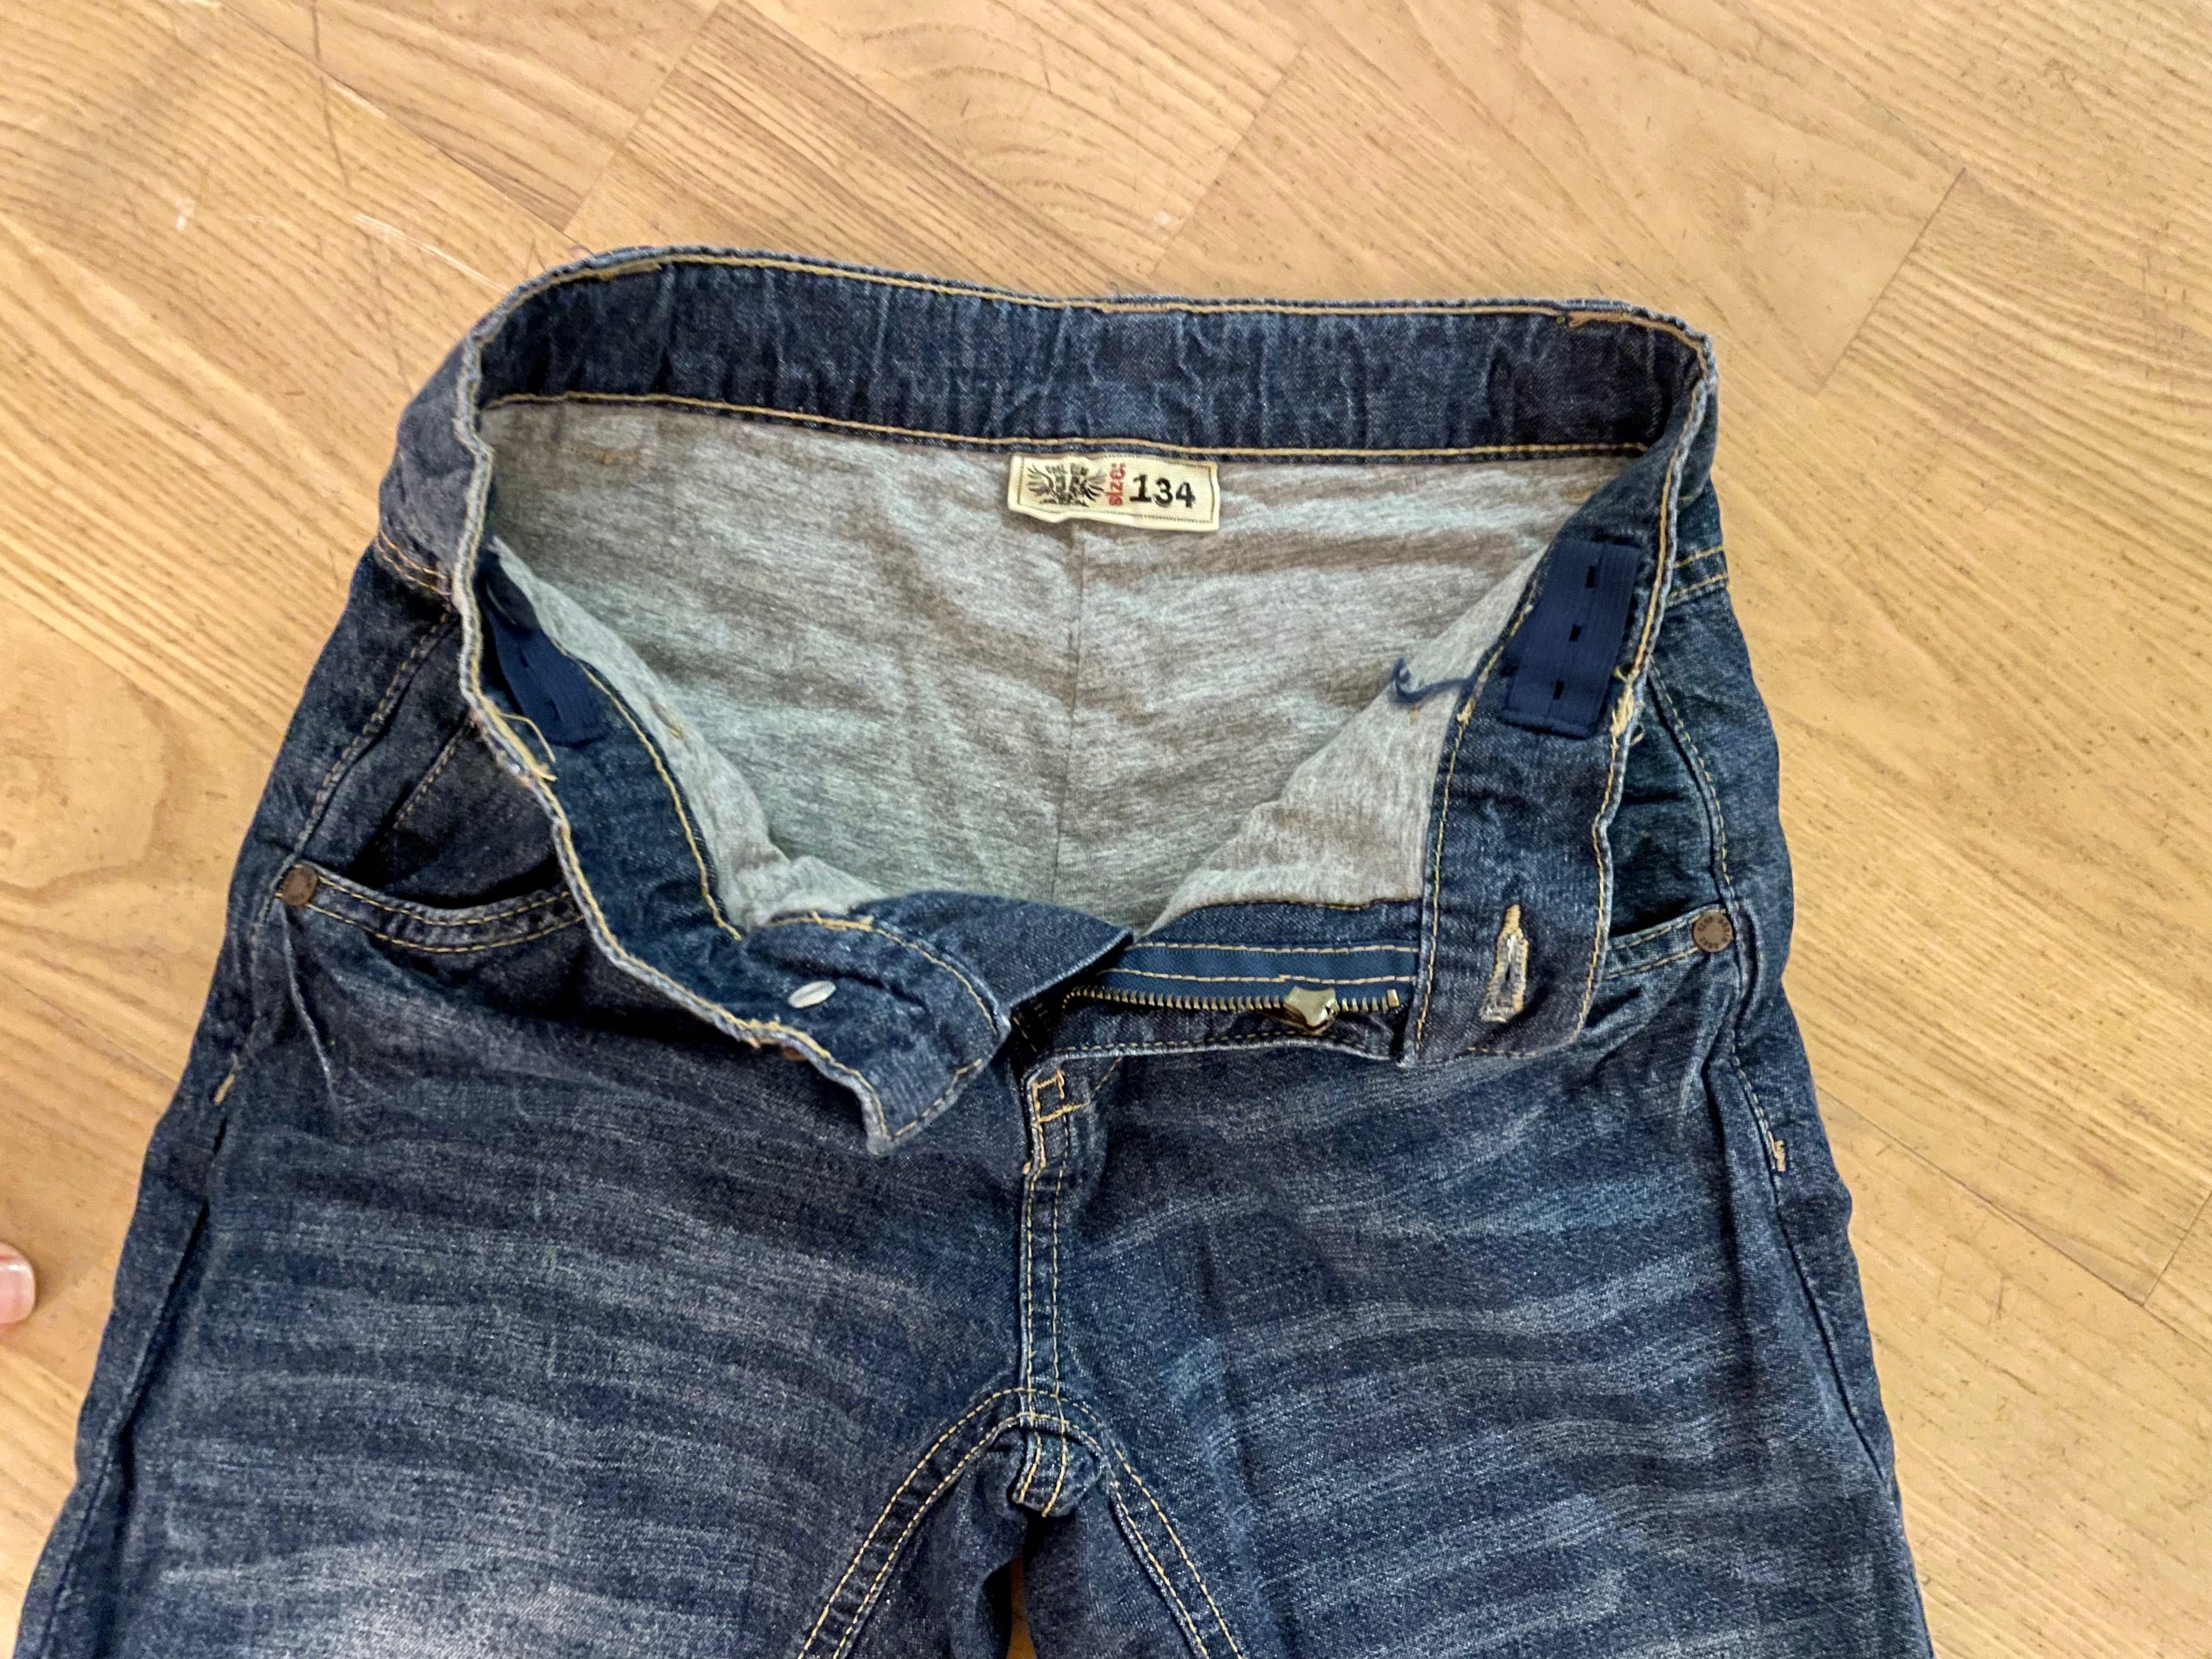 Spodnie jeansowe dla chłopca 134 ocieplane Cool Club jak nowe!